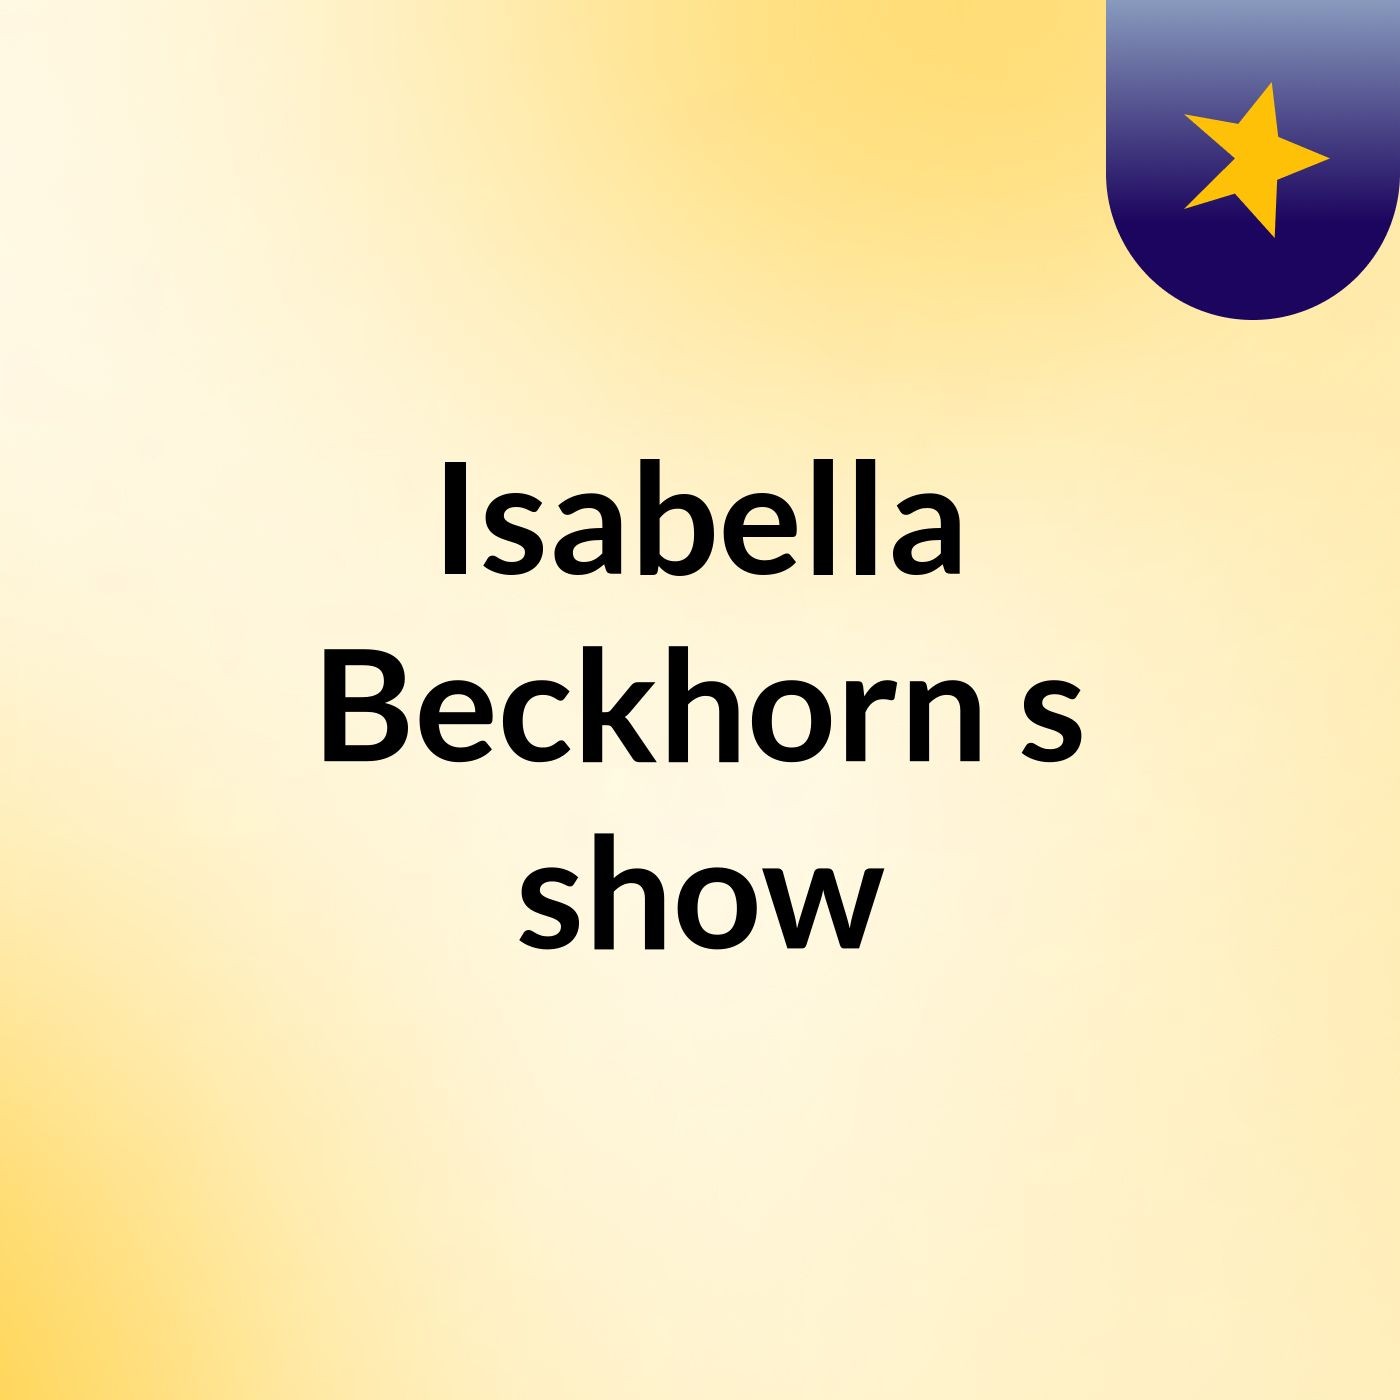 Isabella Beckhorn's show